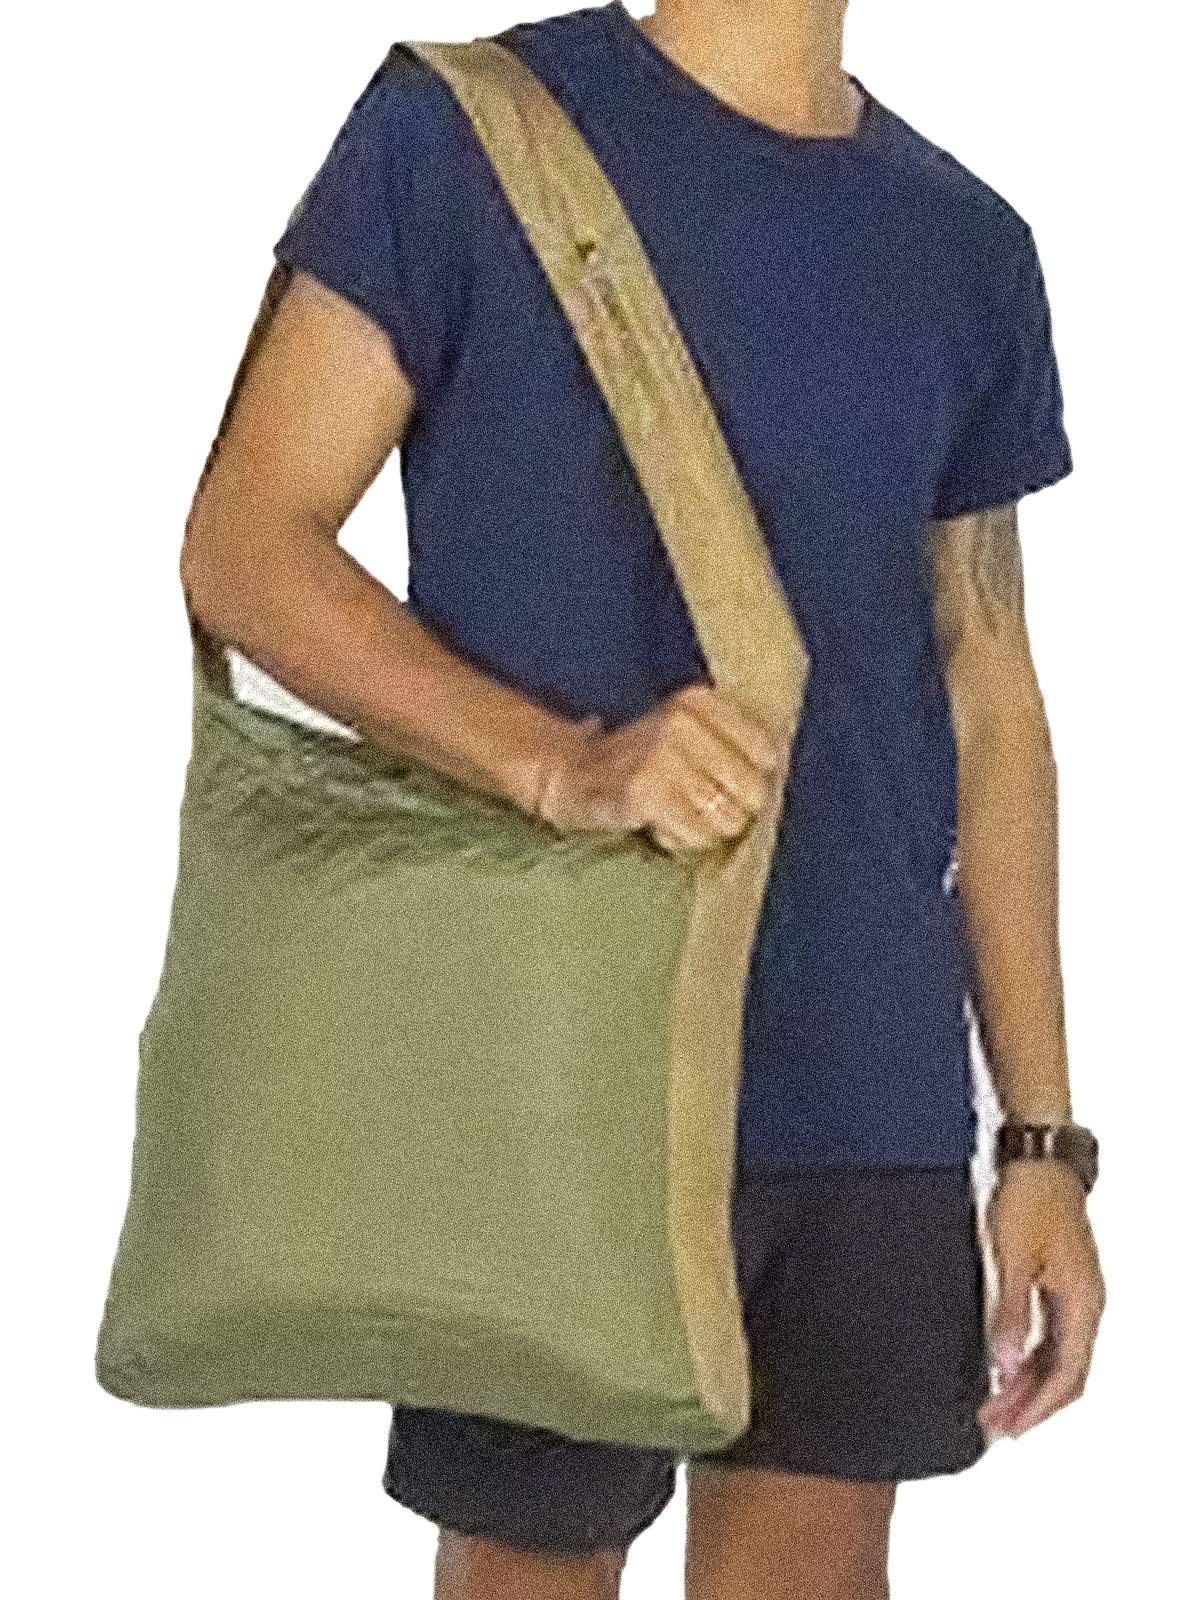 Market Bag (20L)